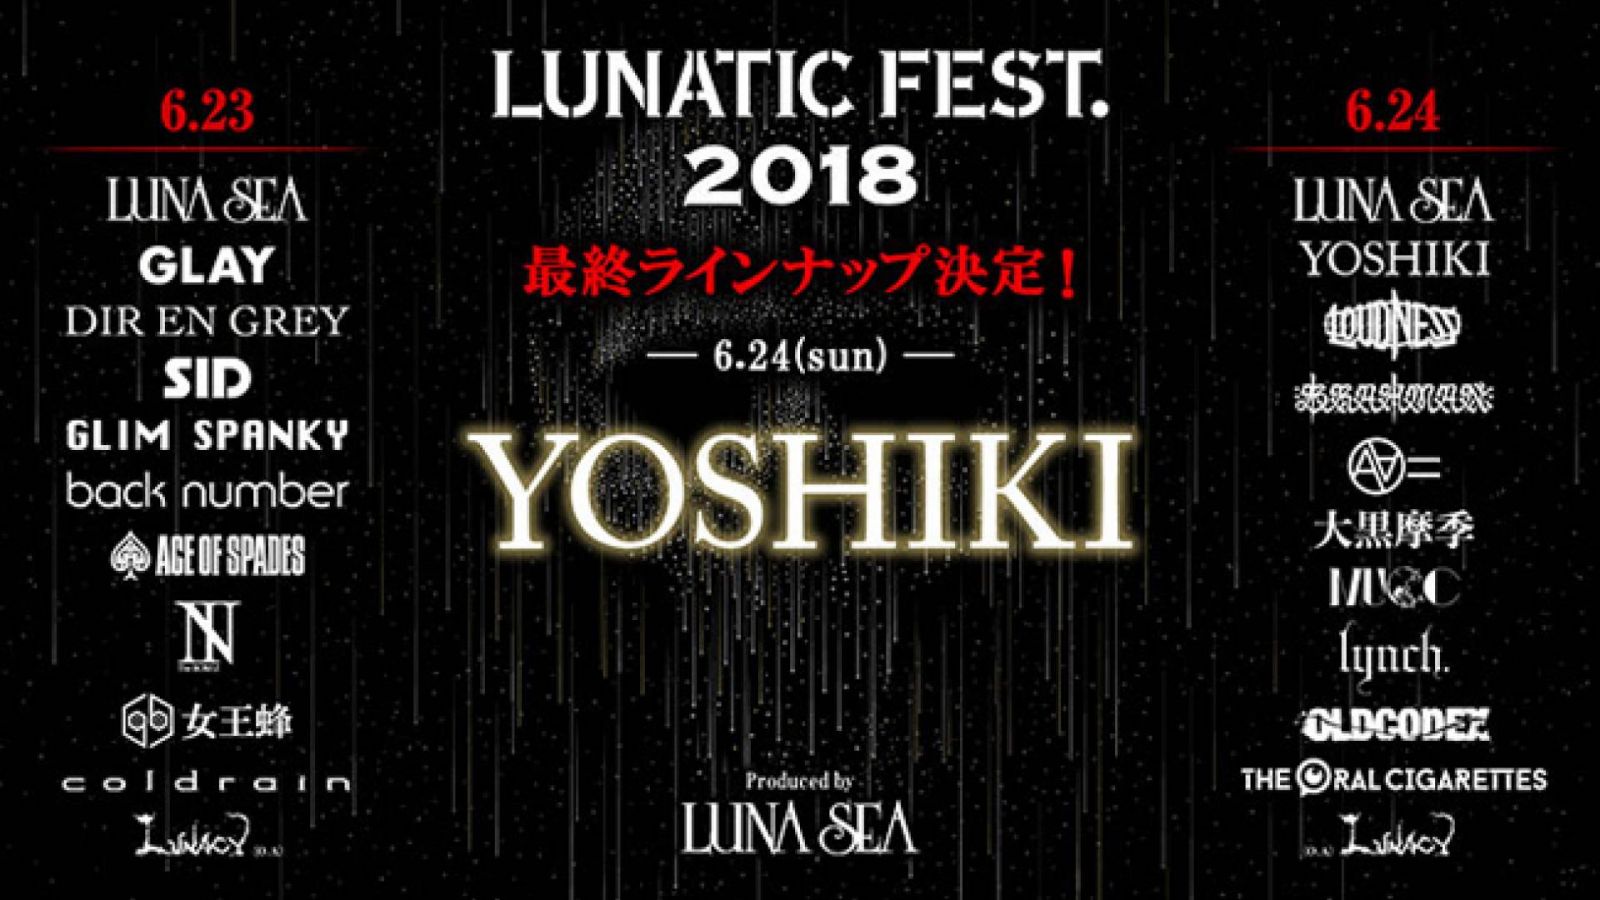 YOSHIKI anuncia su actuación en solitario en LUNATIC FEST. 2018 © LUNATIC FEST. 2018